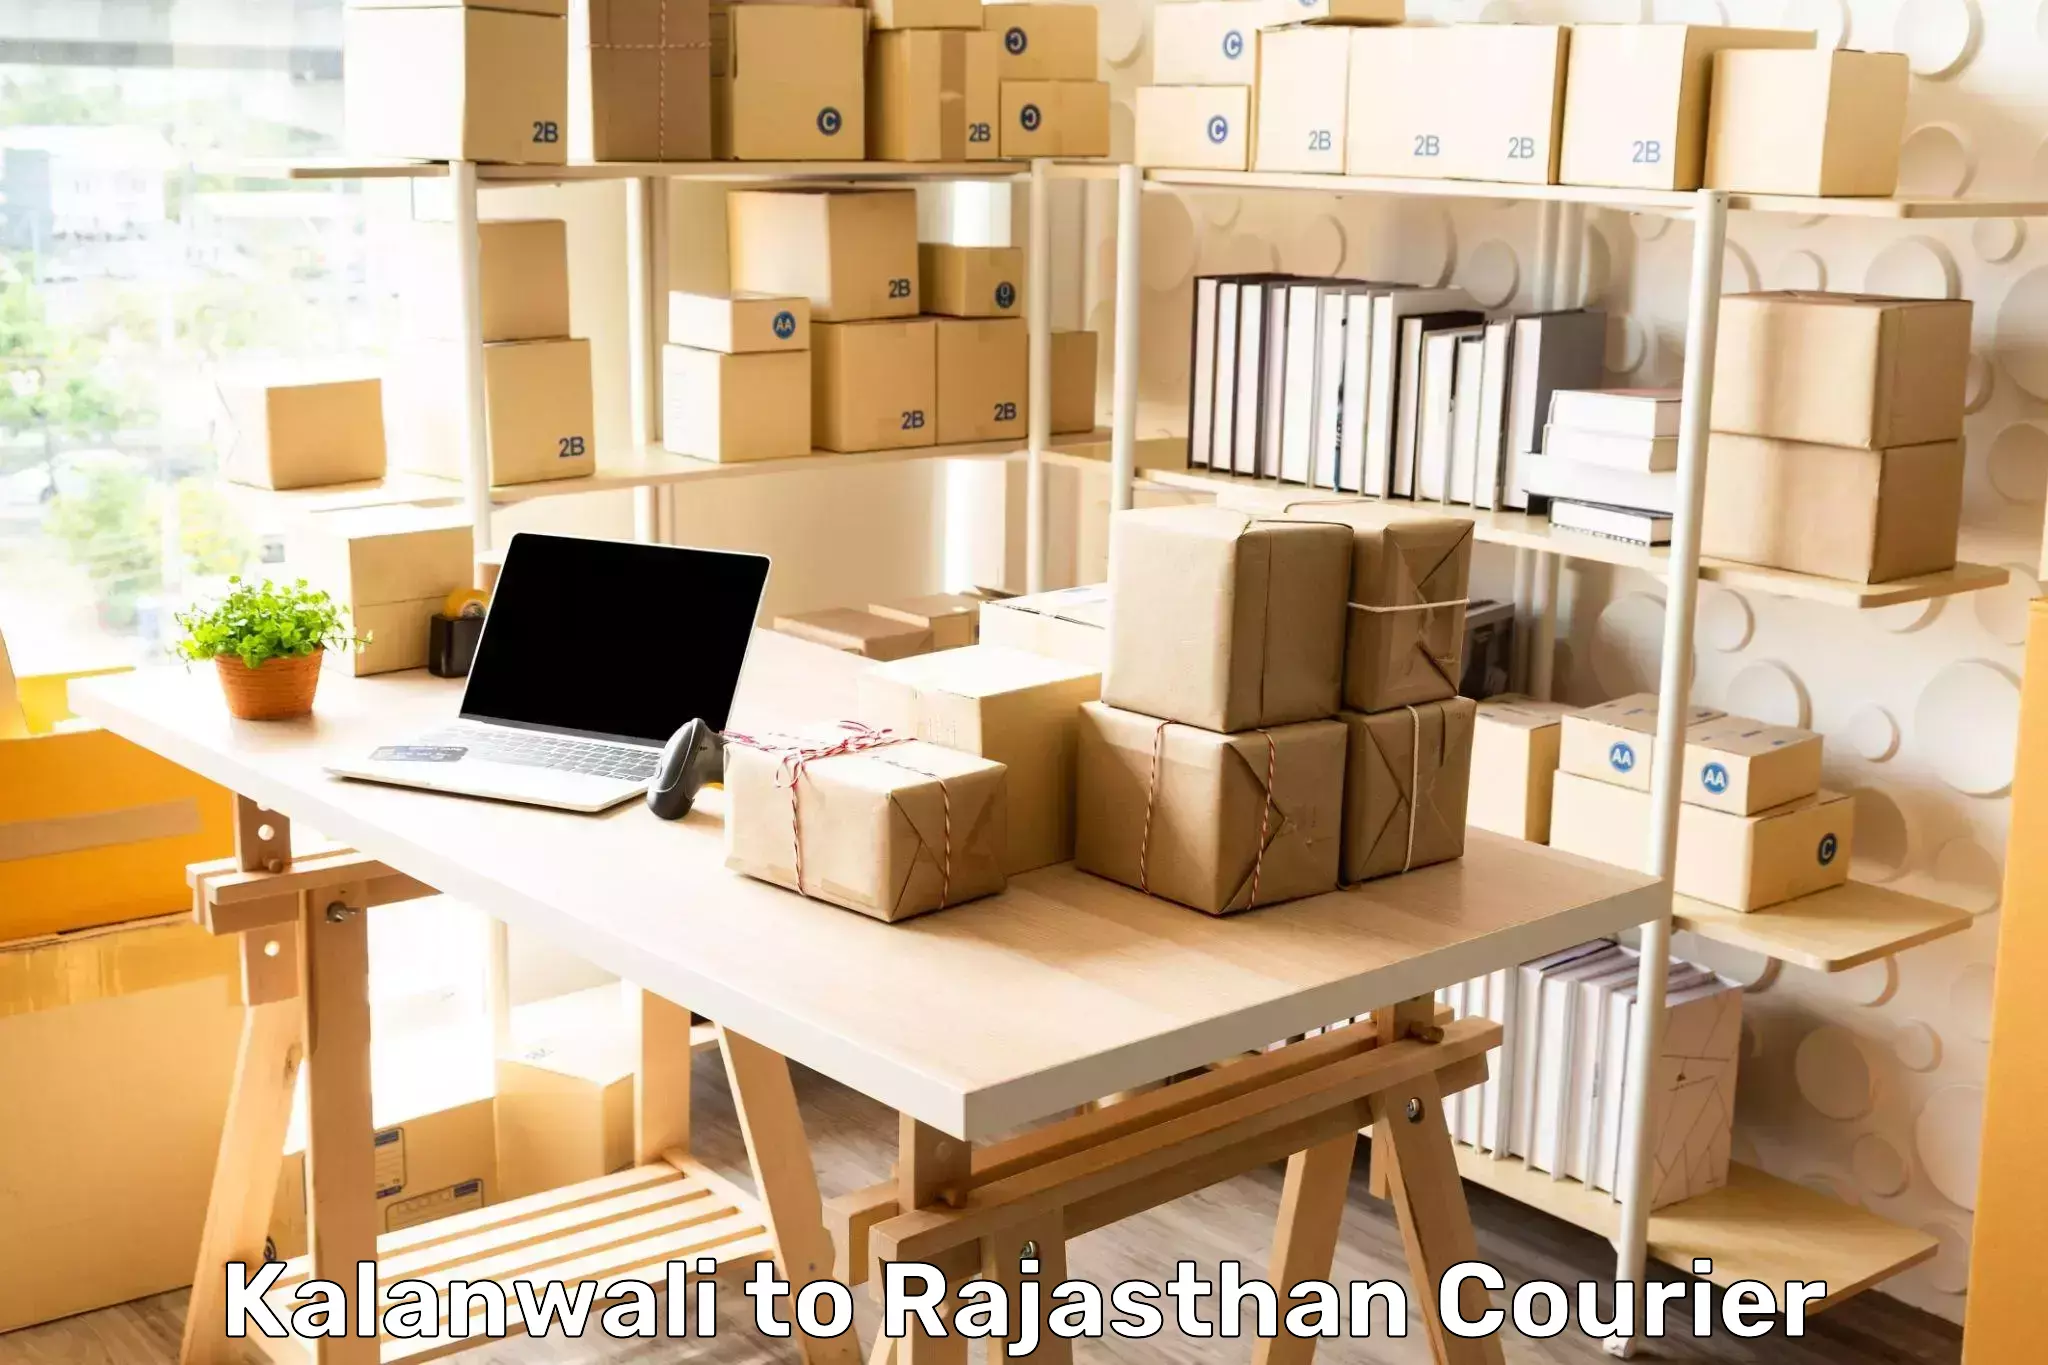 Package consolidation Kalanwali to Bijainagar